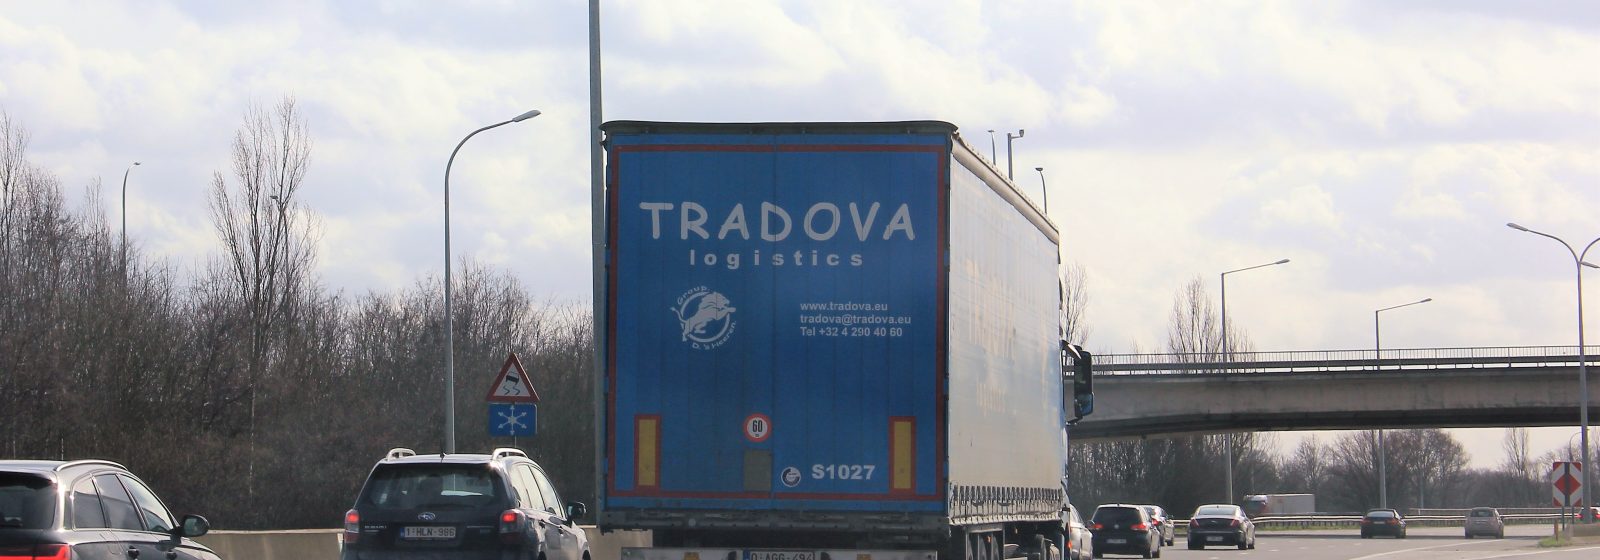 Vrachtwagen Tradova